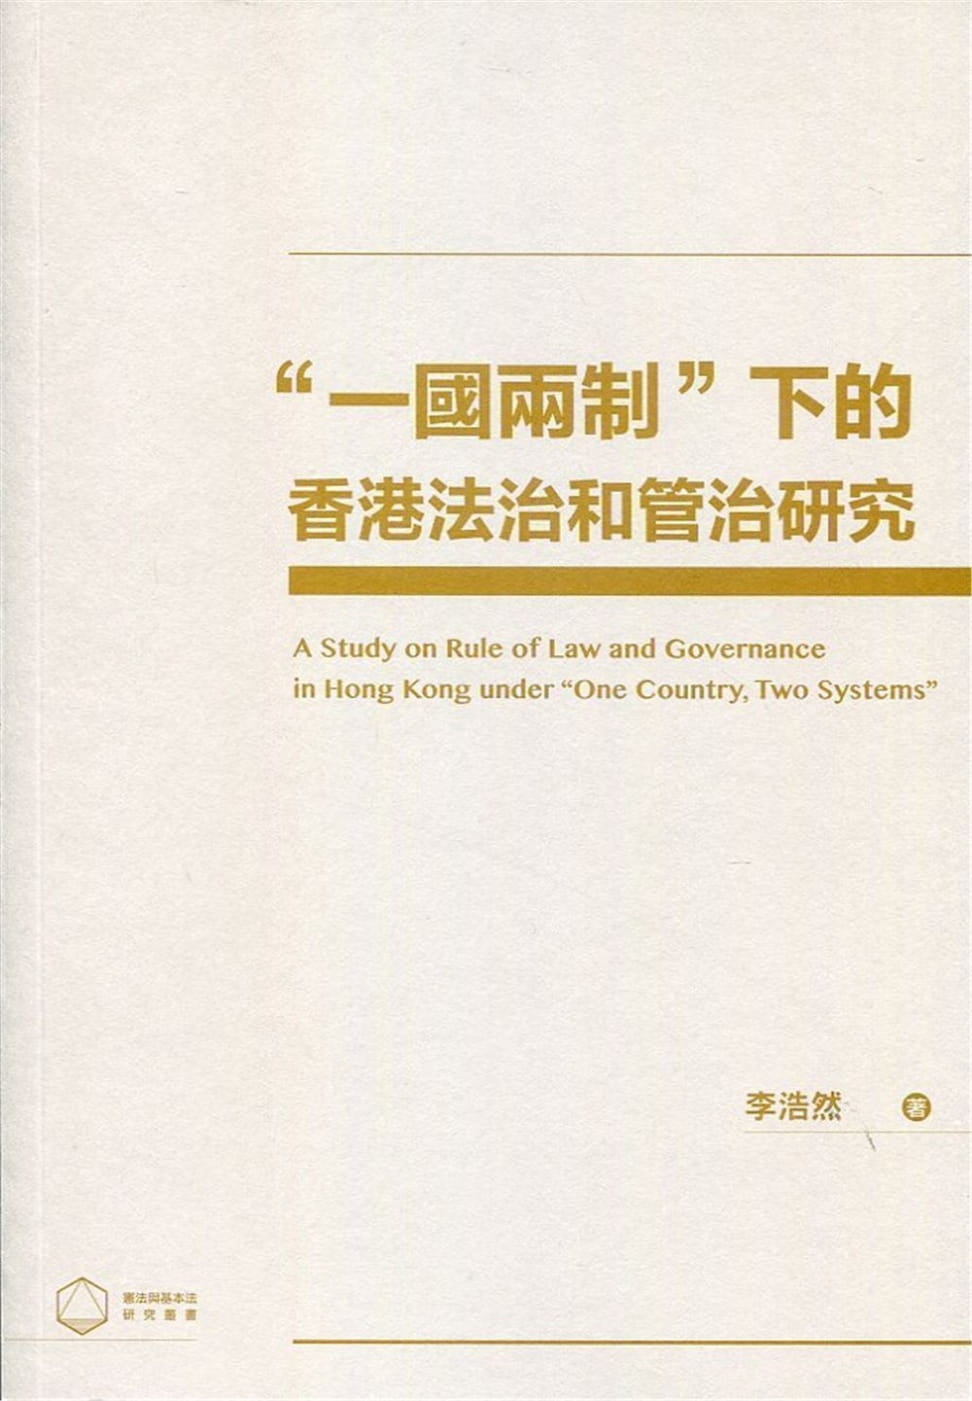 ”一國兩制”下的香港法治和管治研究